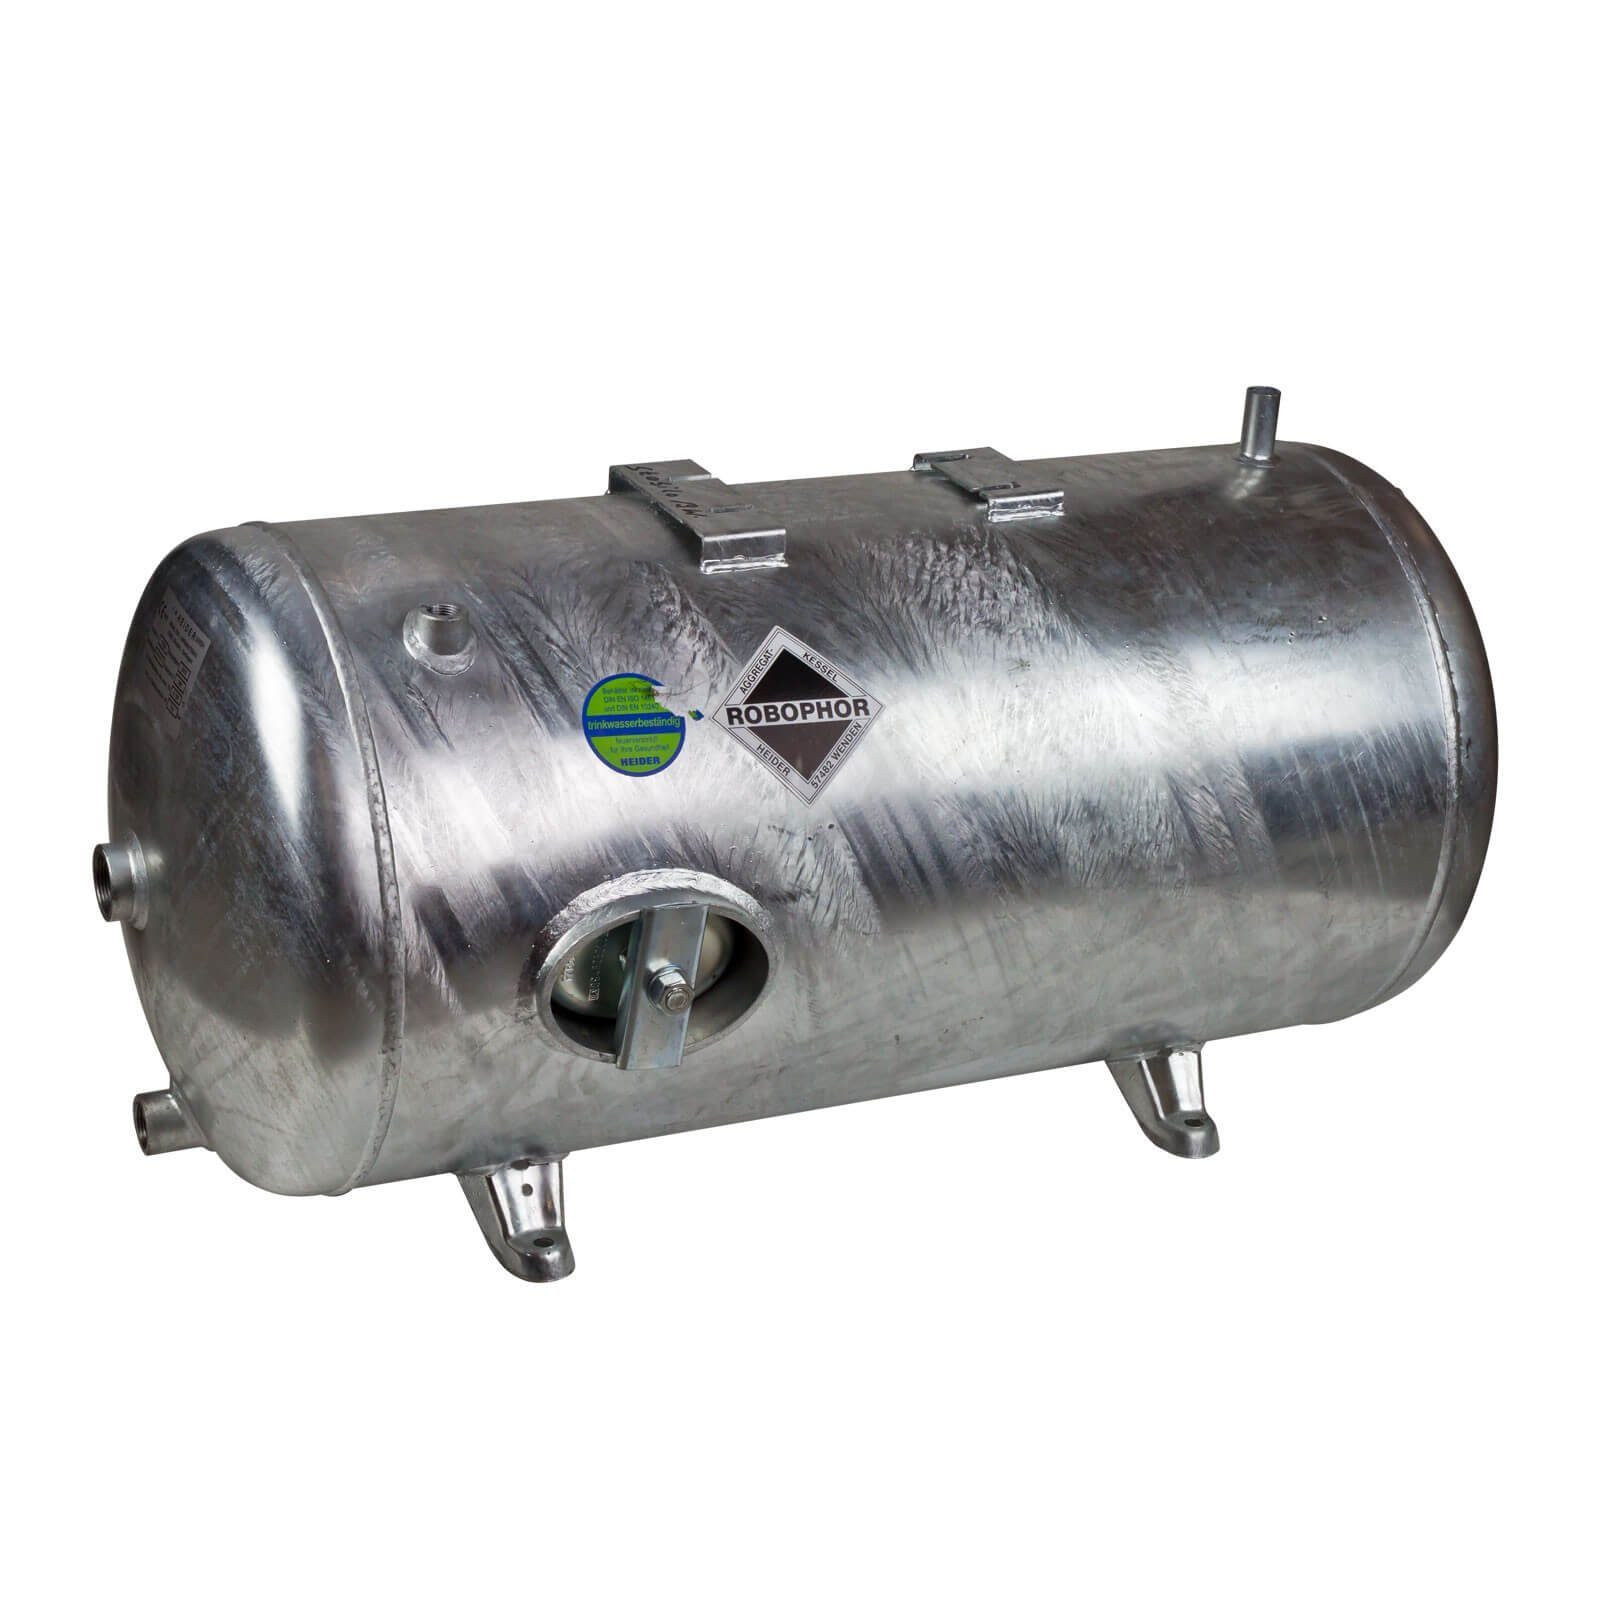 Druckkessel Druckbehälter bar 6 Robophor Heider liegend Liter 245 Heider Wasserkessel